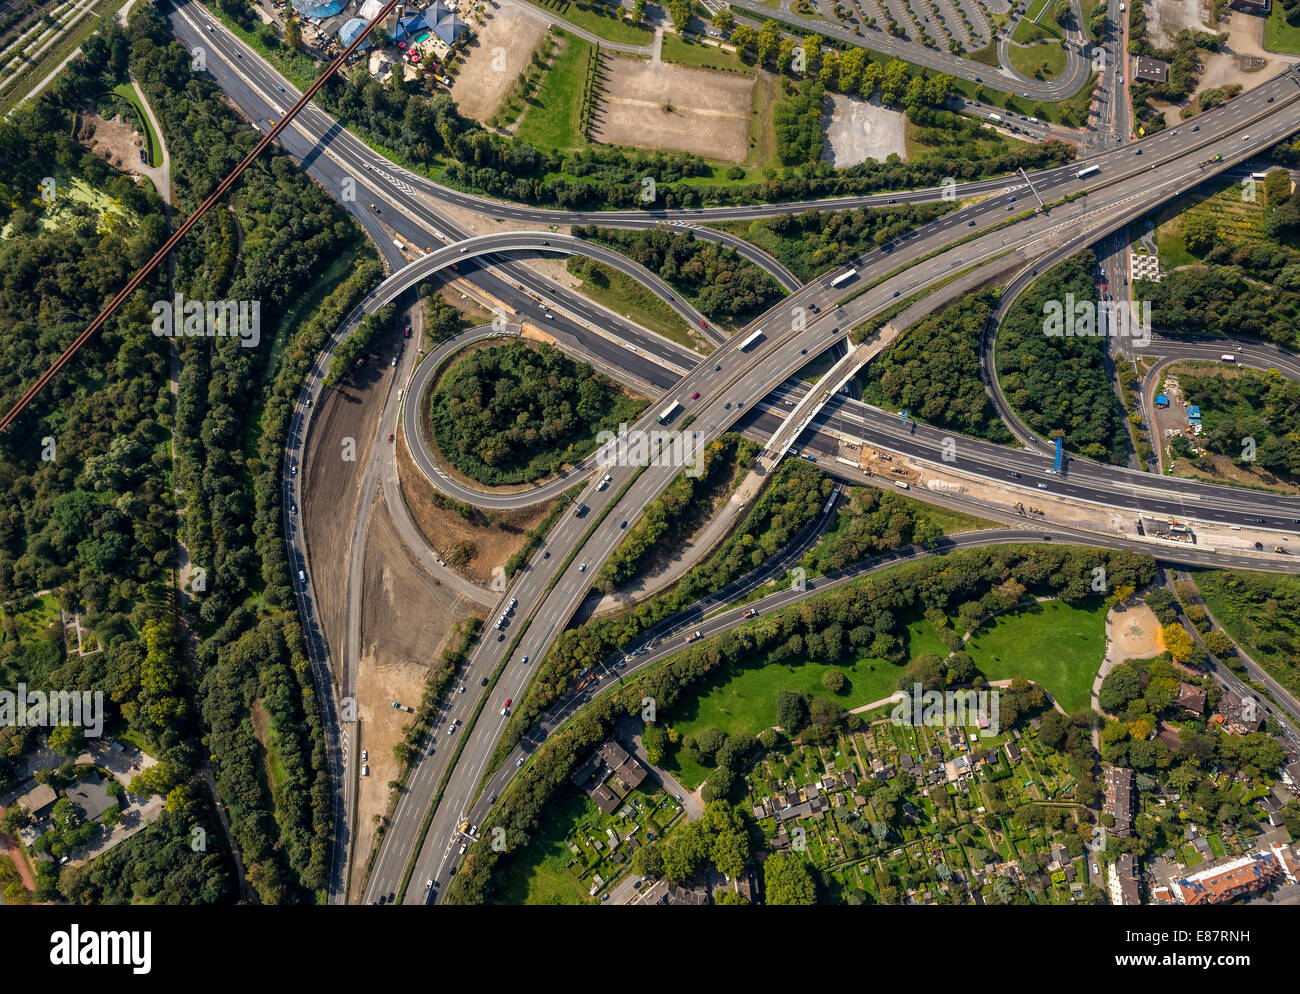 Luftbild, Kreuzung der Autobahnen A59 und A42, Erweiterung und Umbau der Autobahn A59, Duisburg, Ruhrgebiet Stockfoto